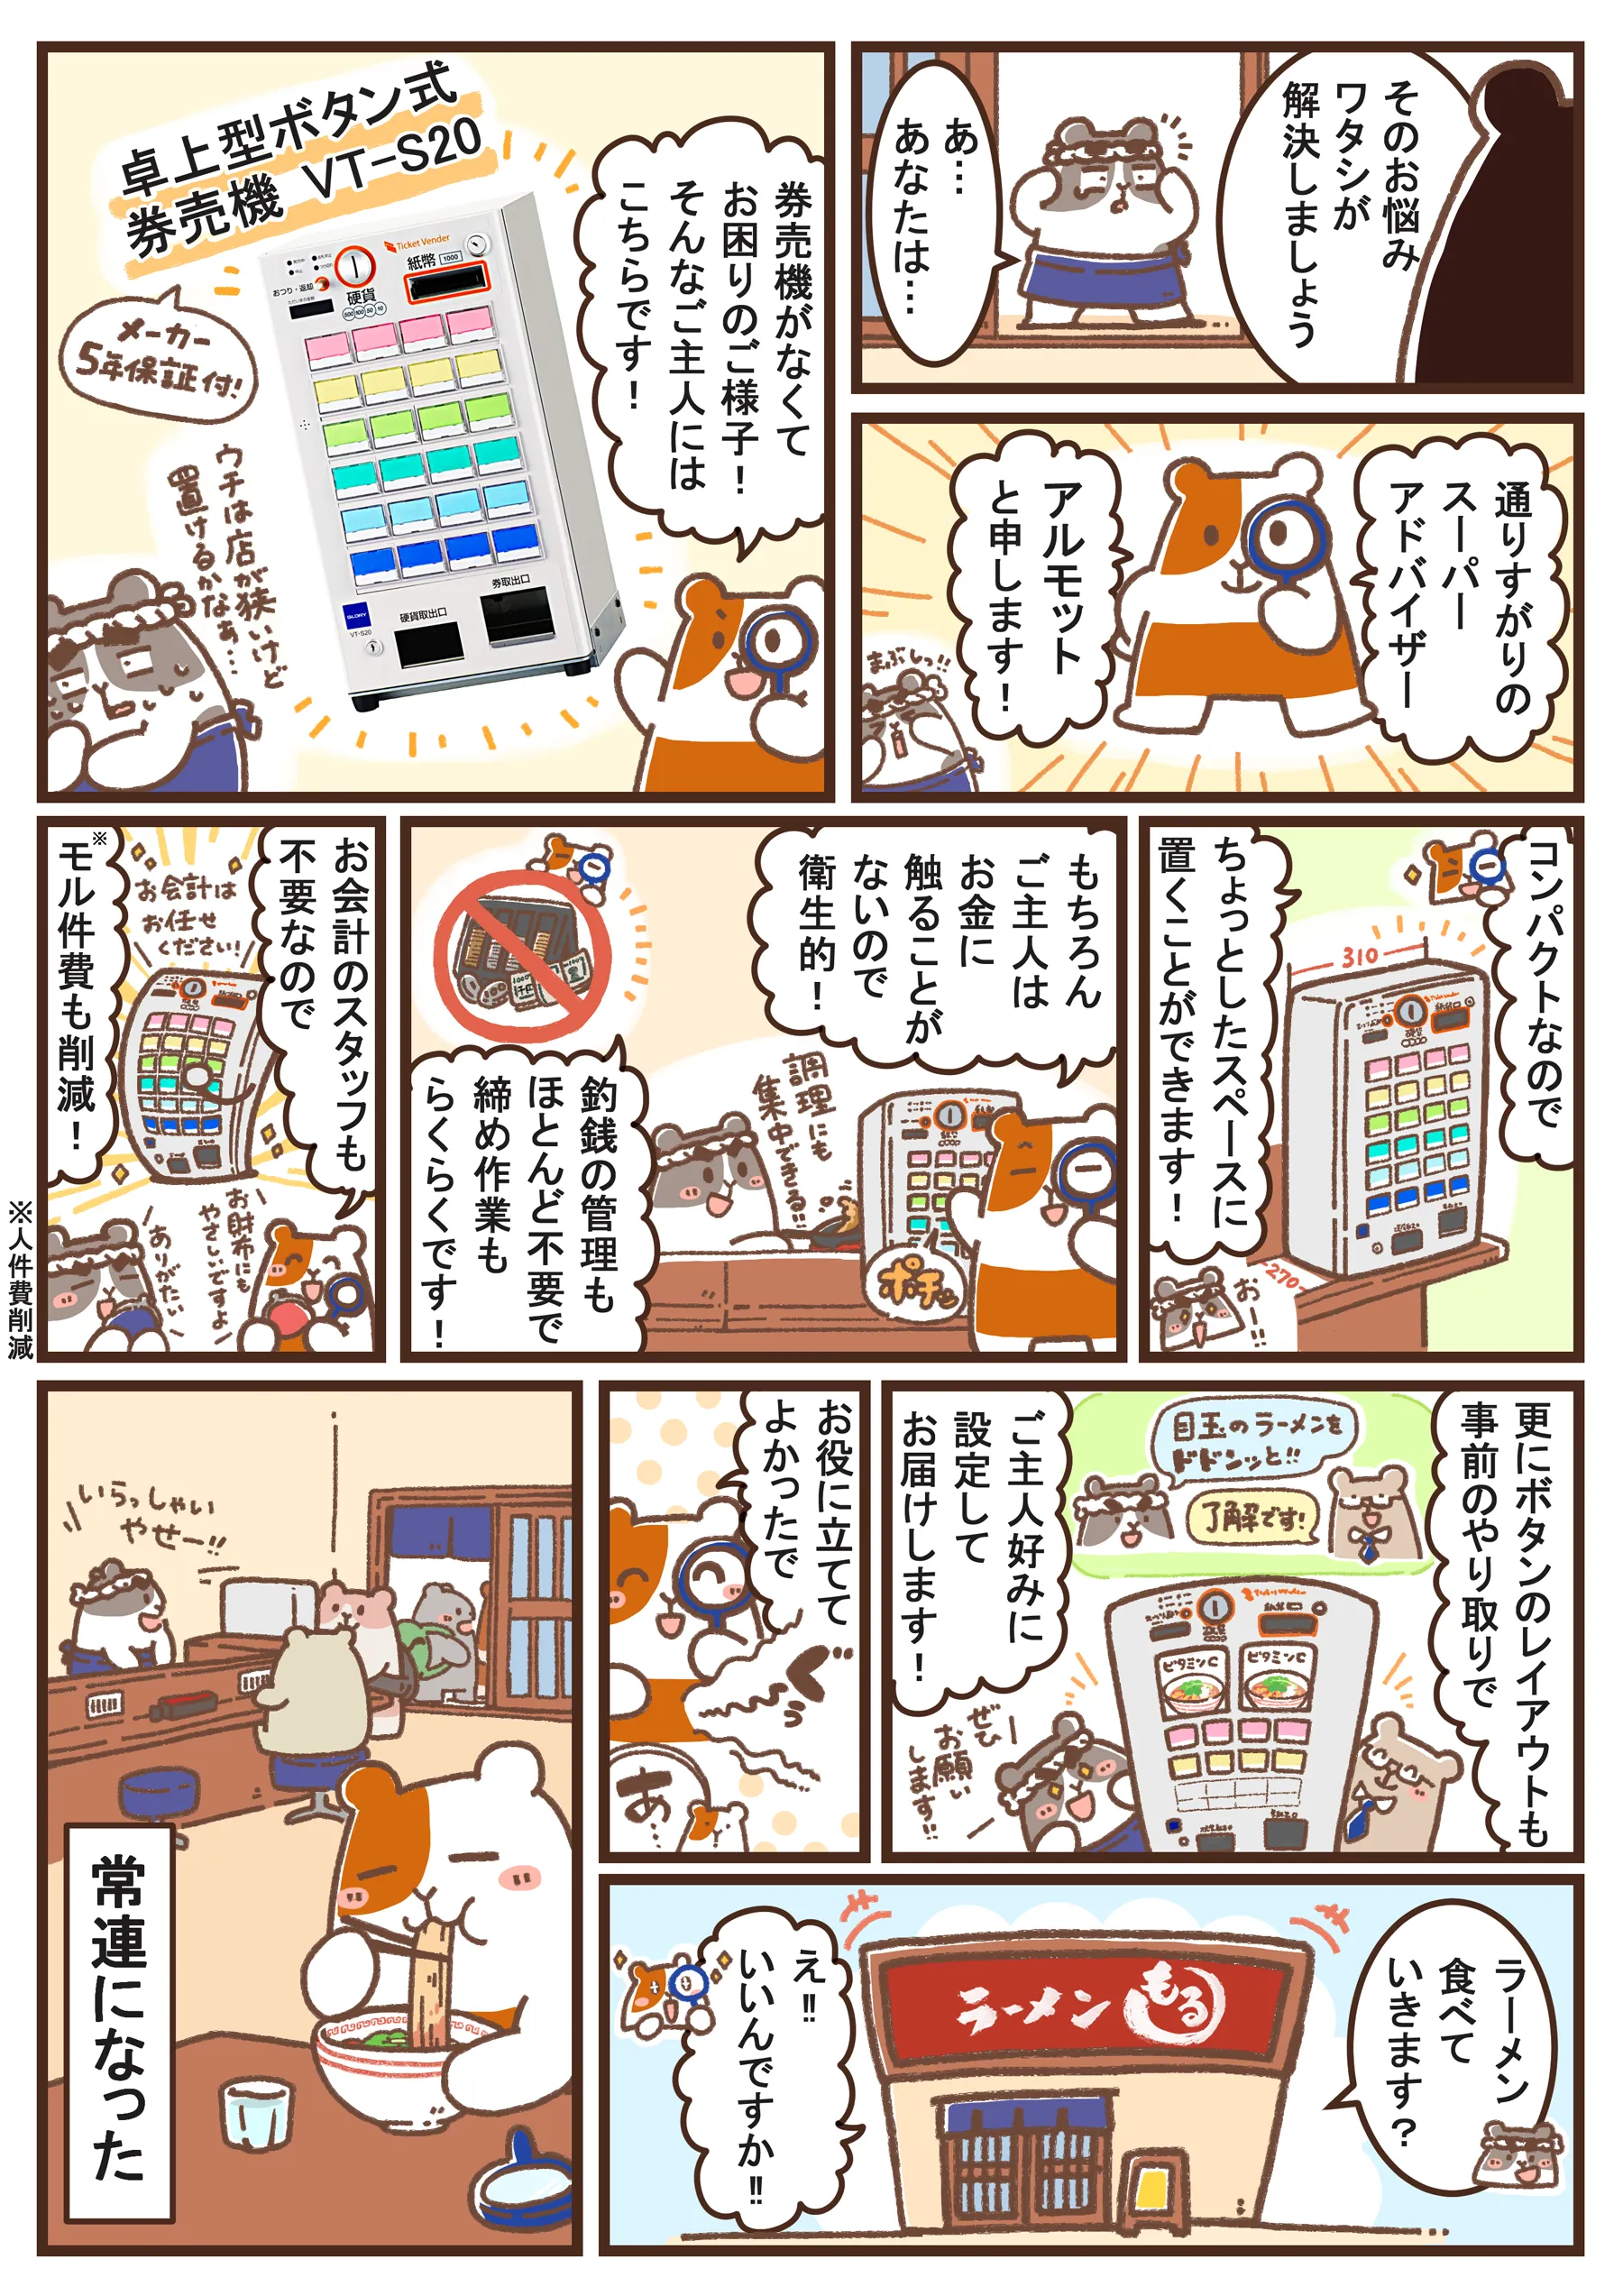 隣のアルモットくん 第一話 券売機 VT-S20　漫画